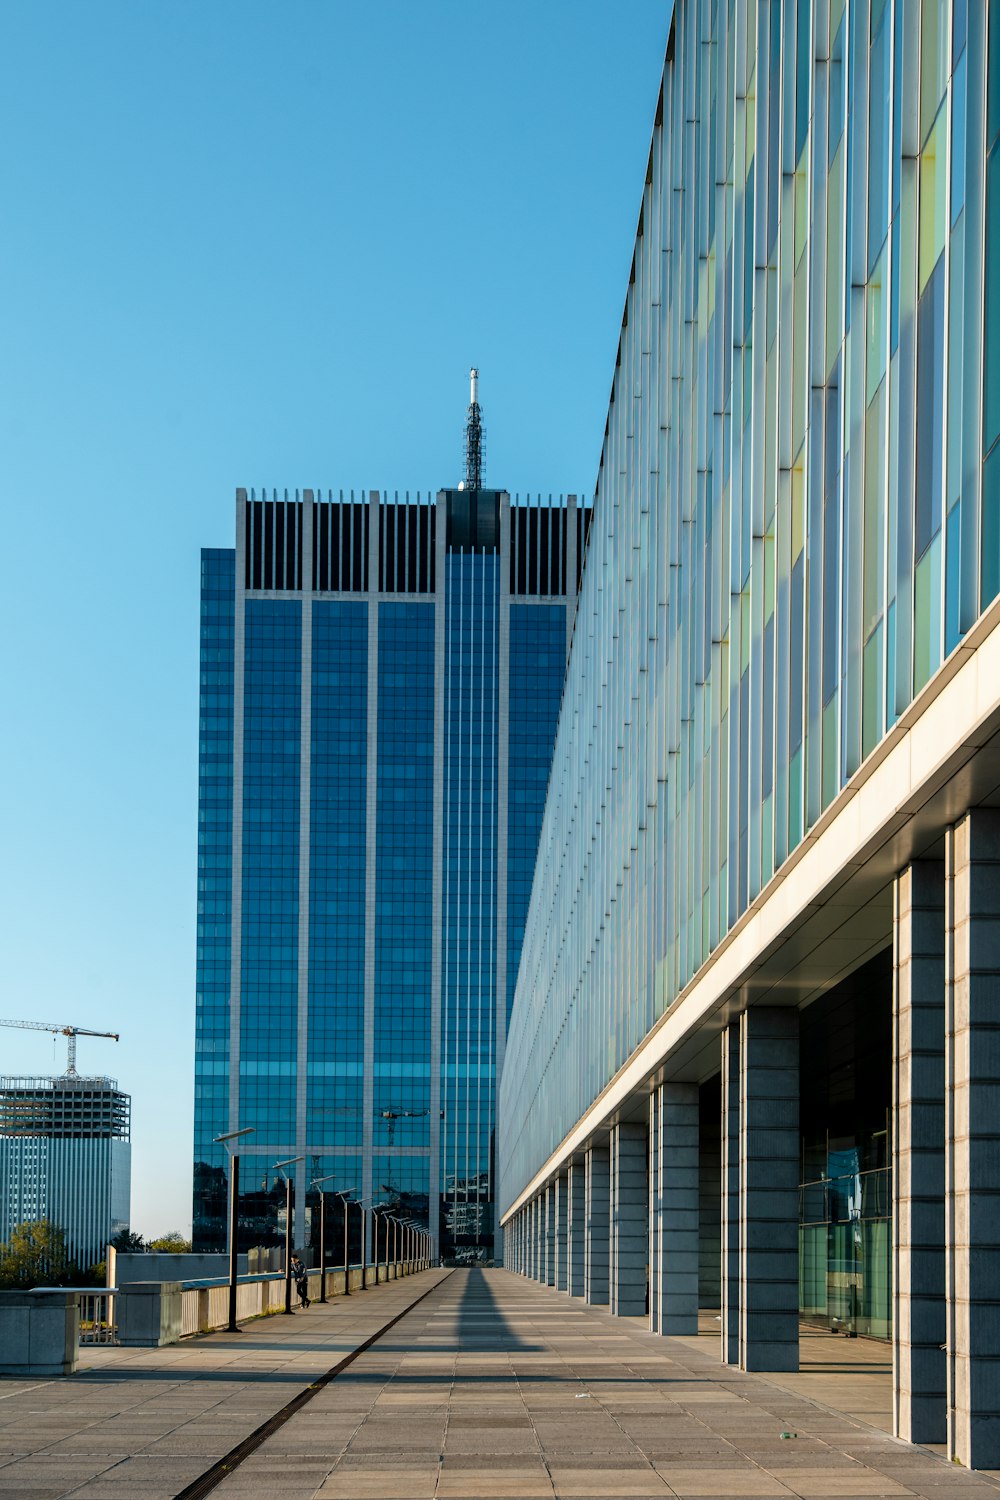 Edificio de gran altura con paredes de vidrio blanco y azul